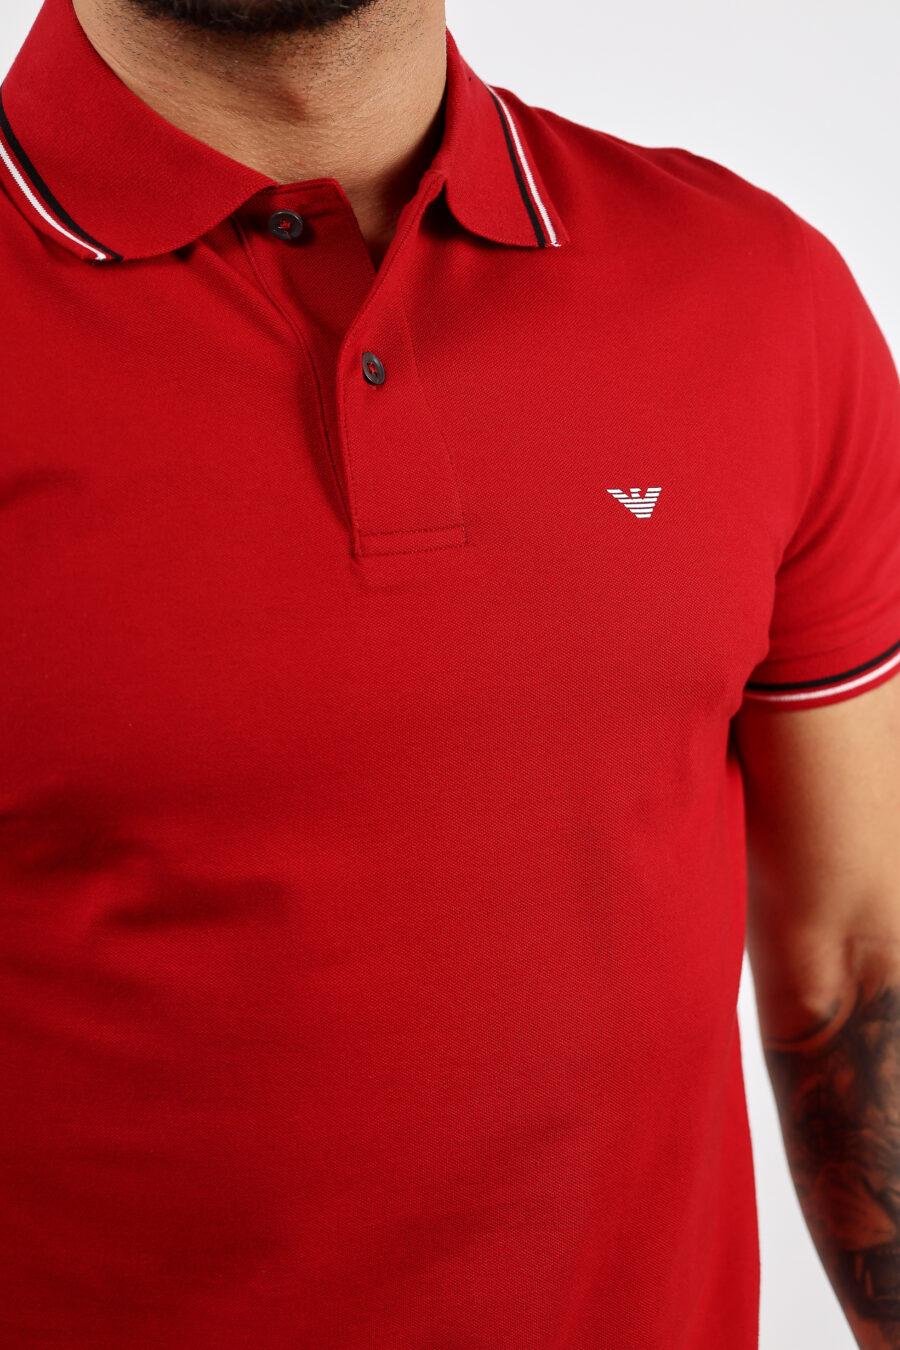 Polo rojo de punto con cuello de rayas y con minilogo águila - BLS Fashion 65